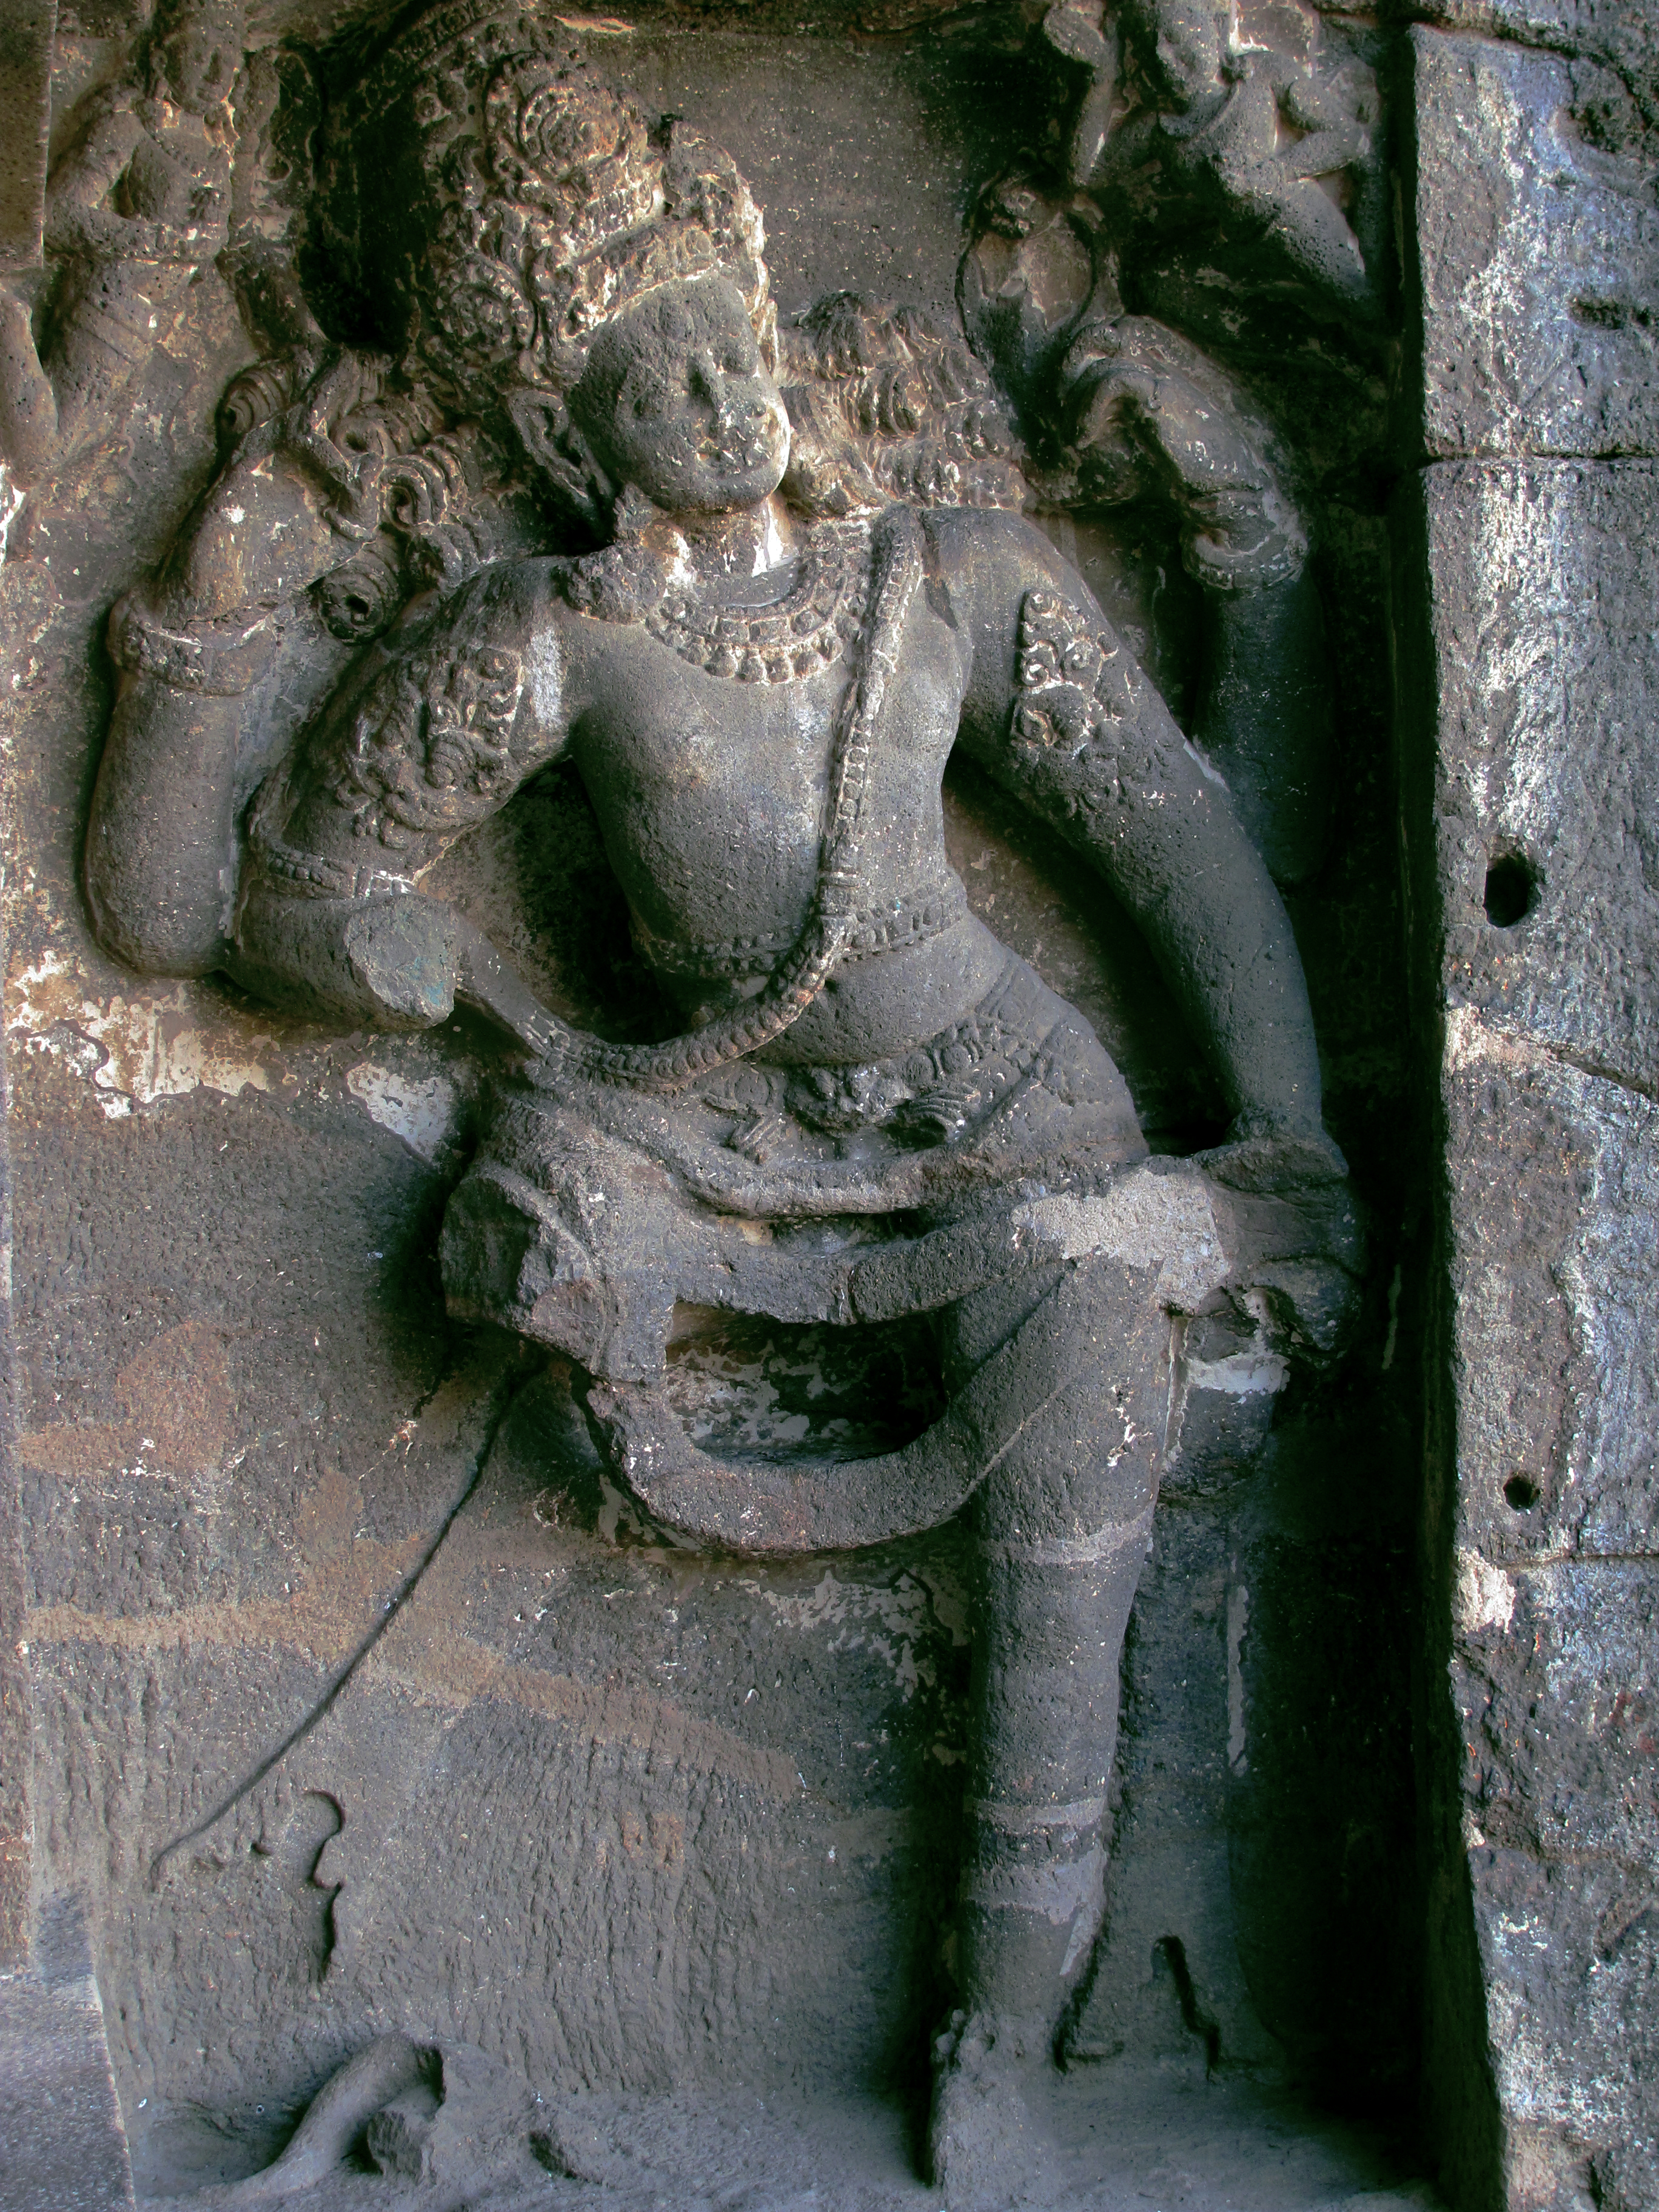 Dashavatara - Wikipedia